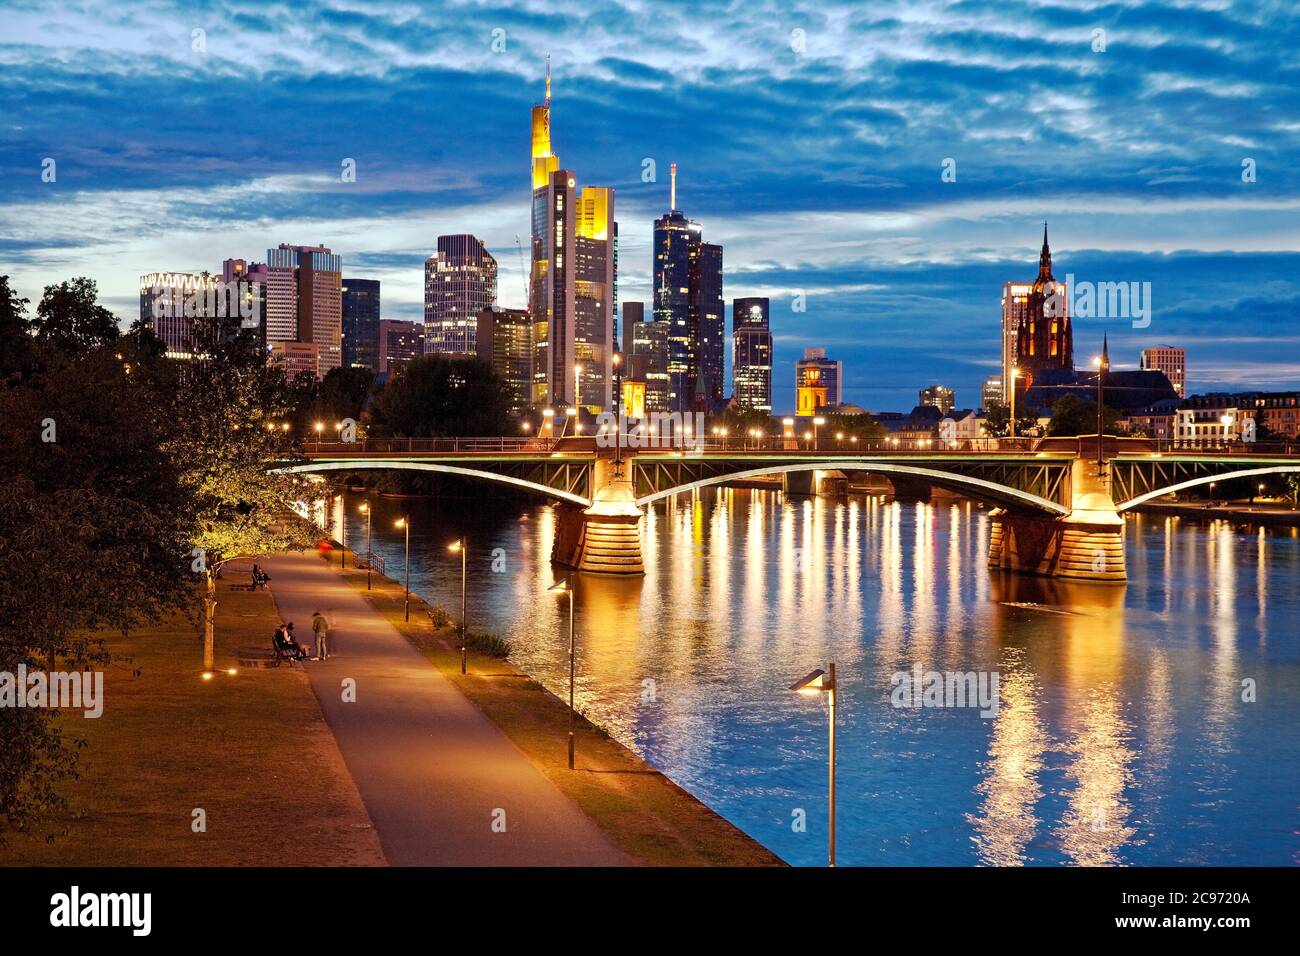 Paisaje urbano por la noche con el distrito financiero y principal, Alemania, Hesse, Frankfurt am Main Foto de stock